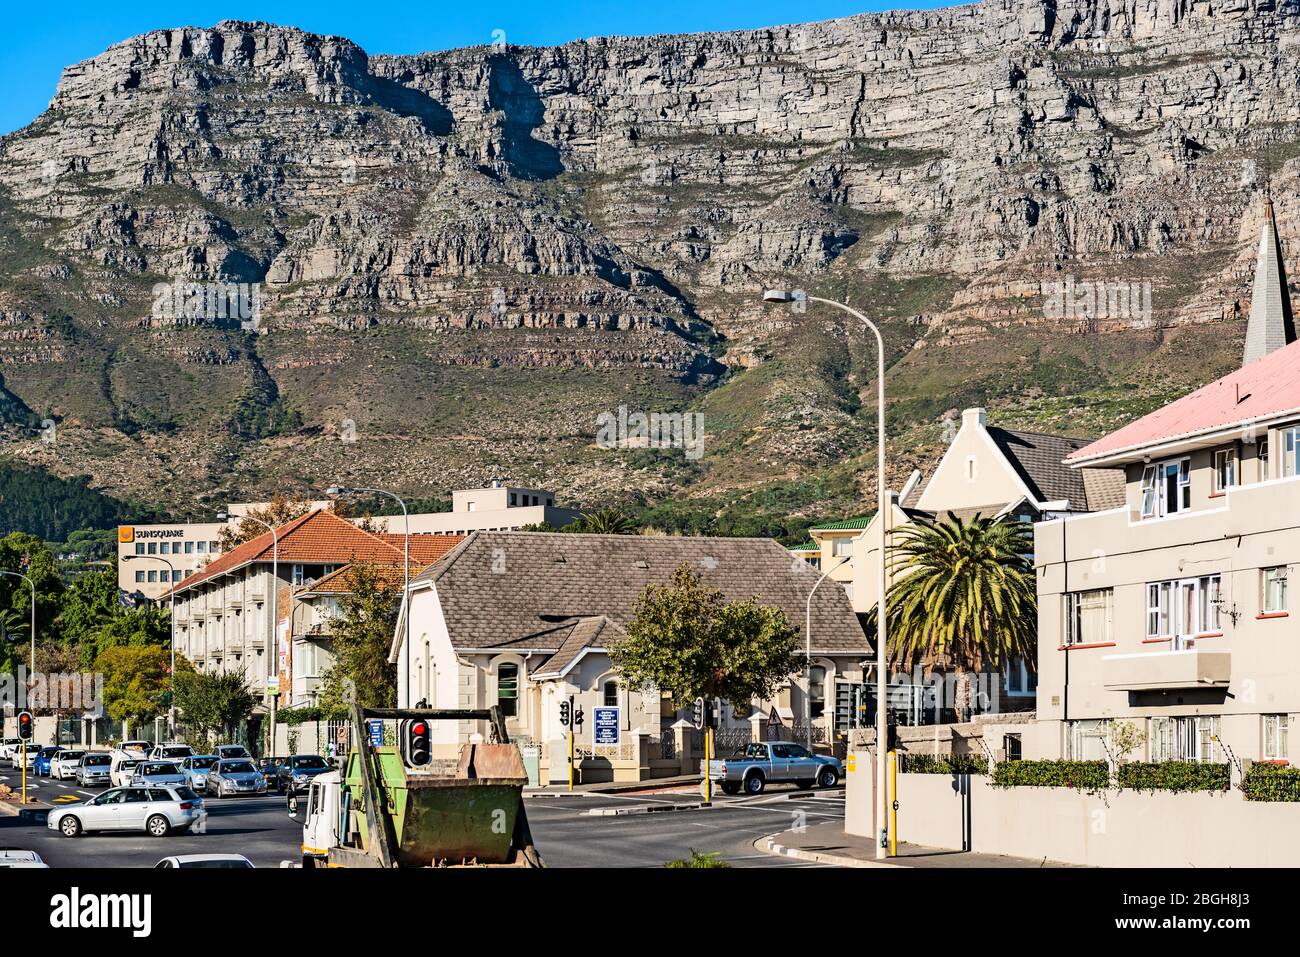 Le Cap, Afrique du Sud - 11 mai 2016 : vue sur les bâtiments du Cap avec Table Mountain à l'arrière-plan, Afrique du Sud. Banque D'Images